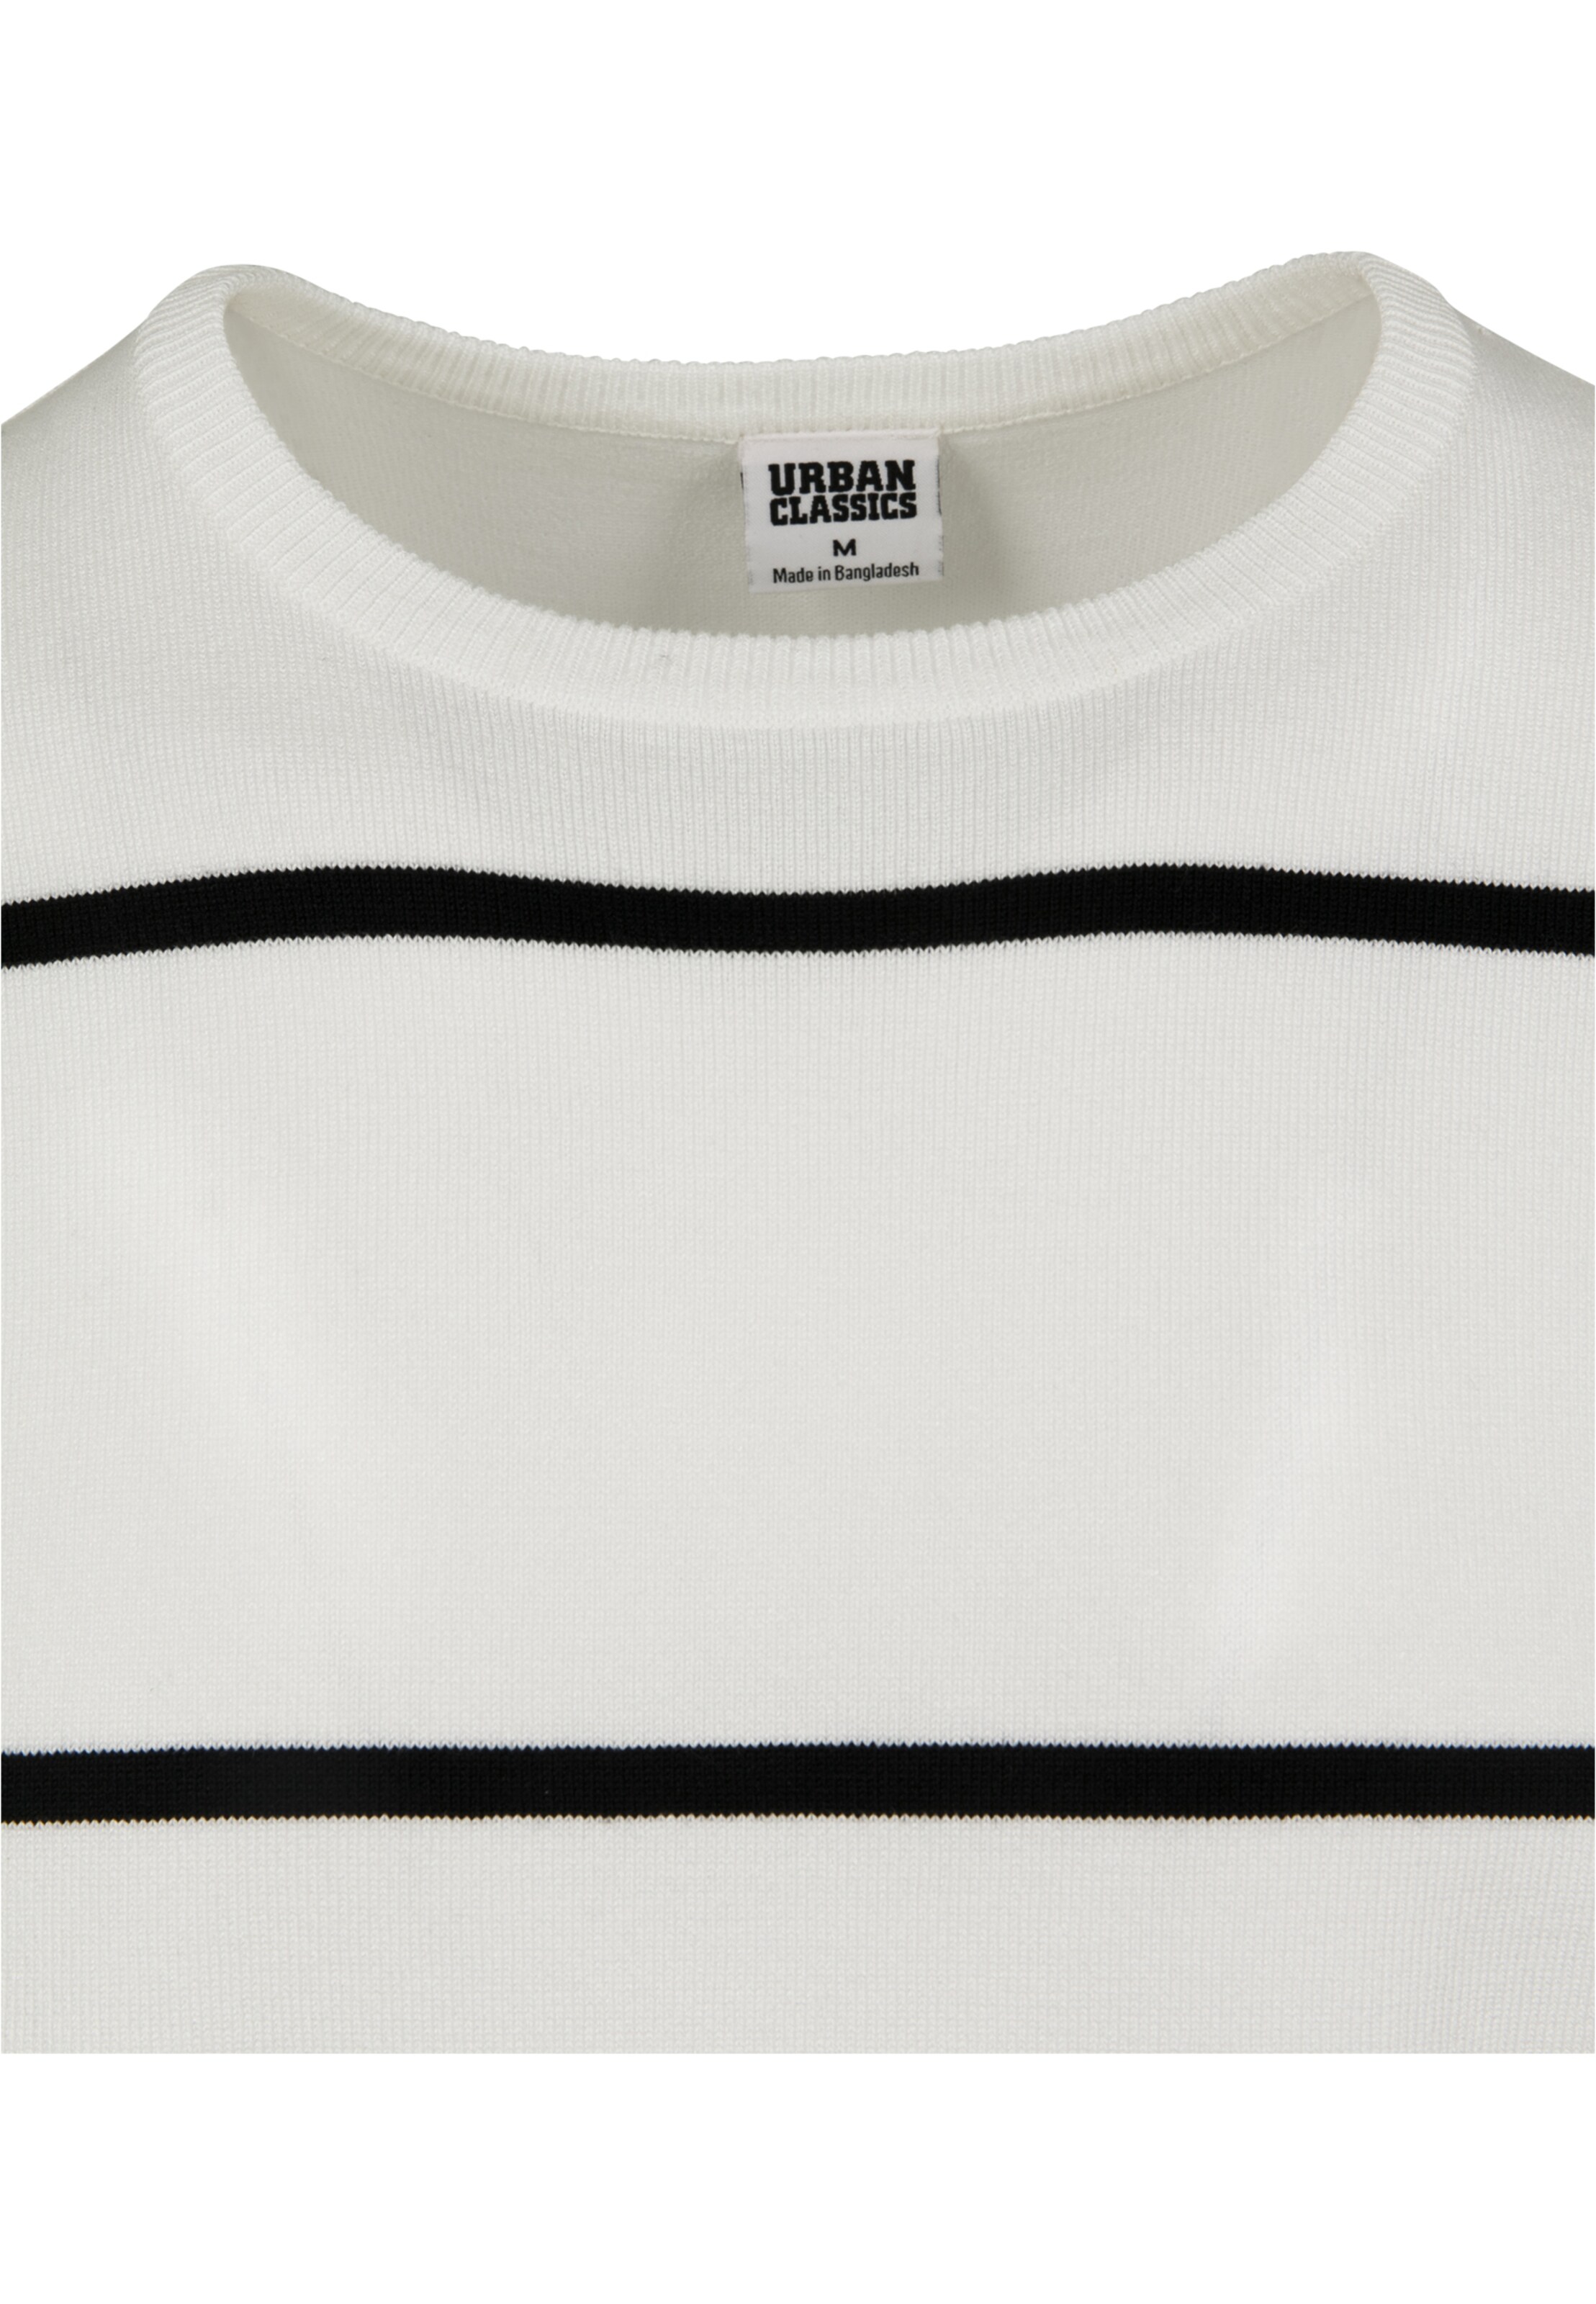 Männer Pullover & Strick Urban Classics Pullover in Schwarz, Weiß - PM16858